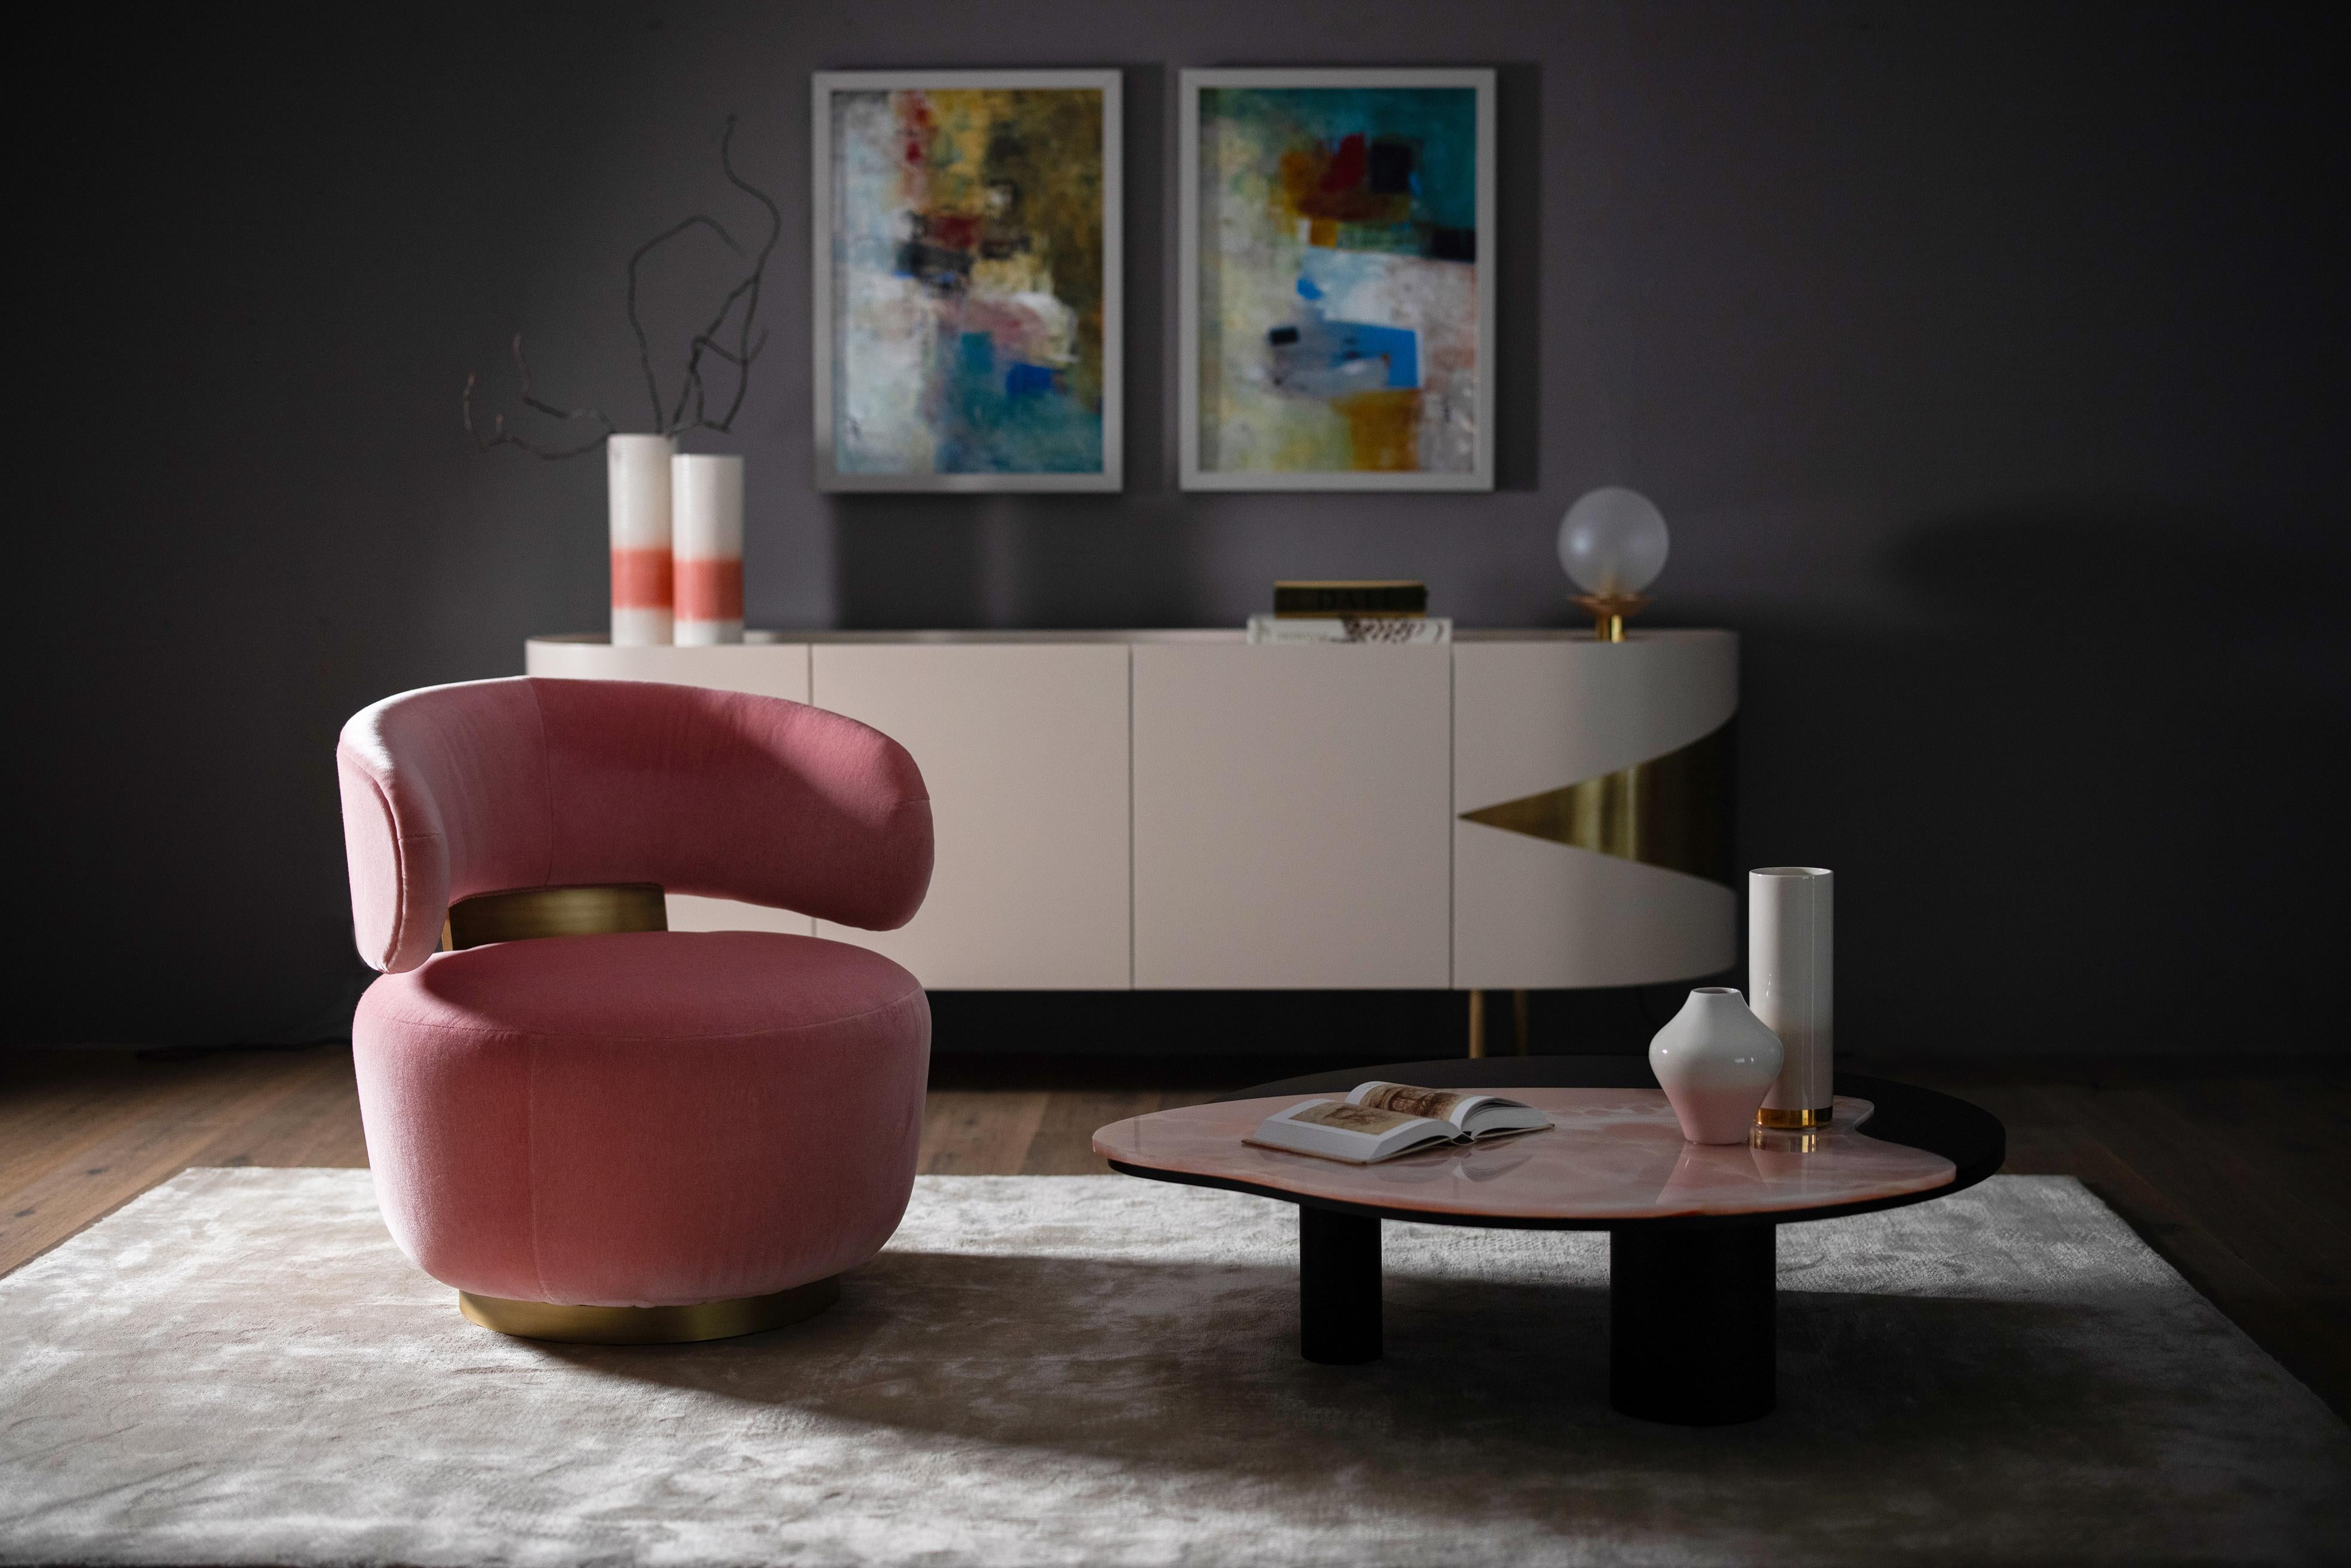 Caju Swivel Lounge Chair, Contemporary Collection, Handcrafted in Portugal - Europe by Greenapple.

La chaise longue Caju est un meuble tendance qui personnifie la forme organique d'un cajou. Tapissé de velours Pink, le design de la chaise longue